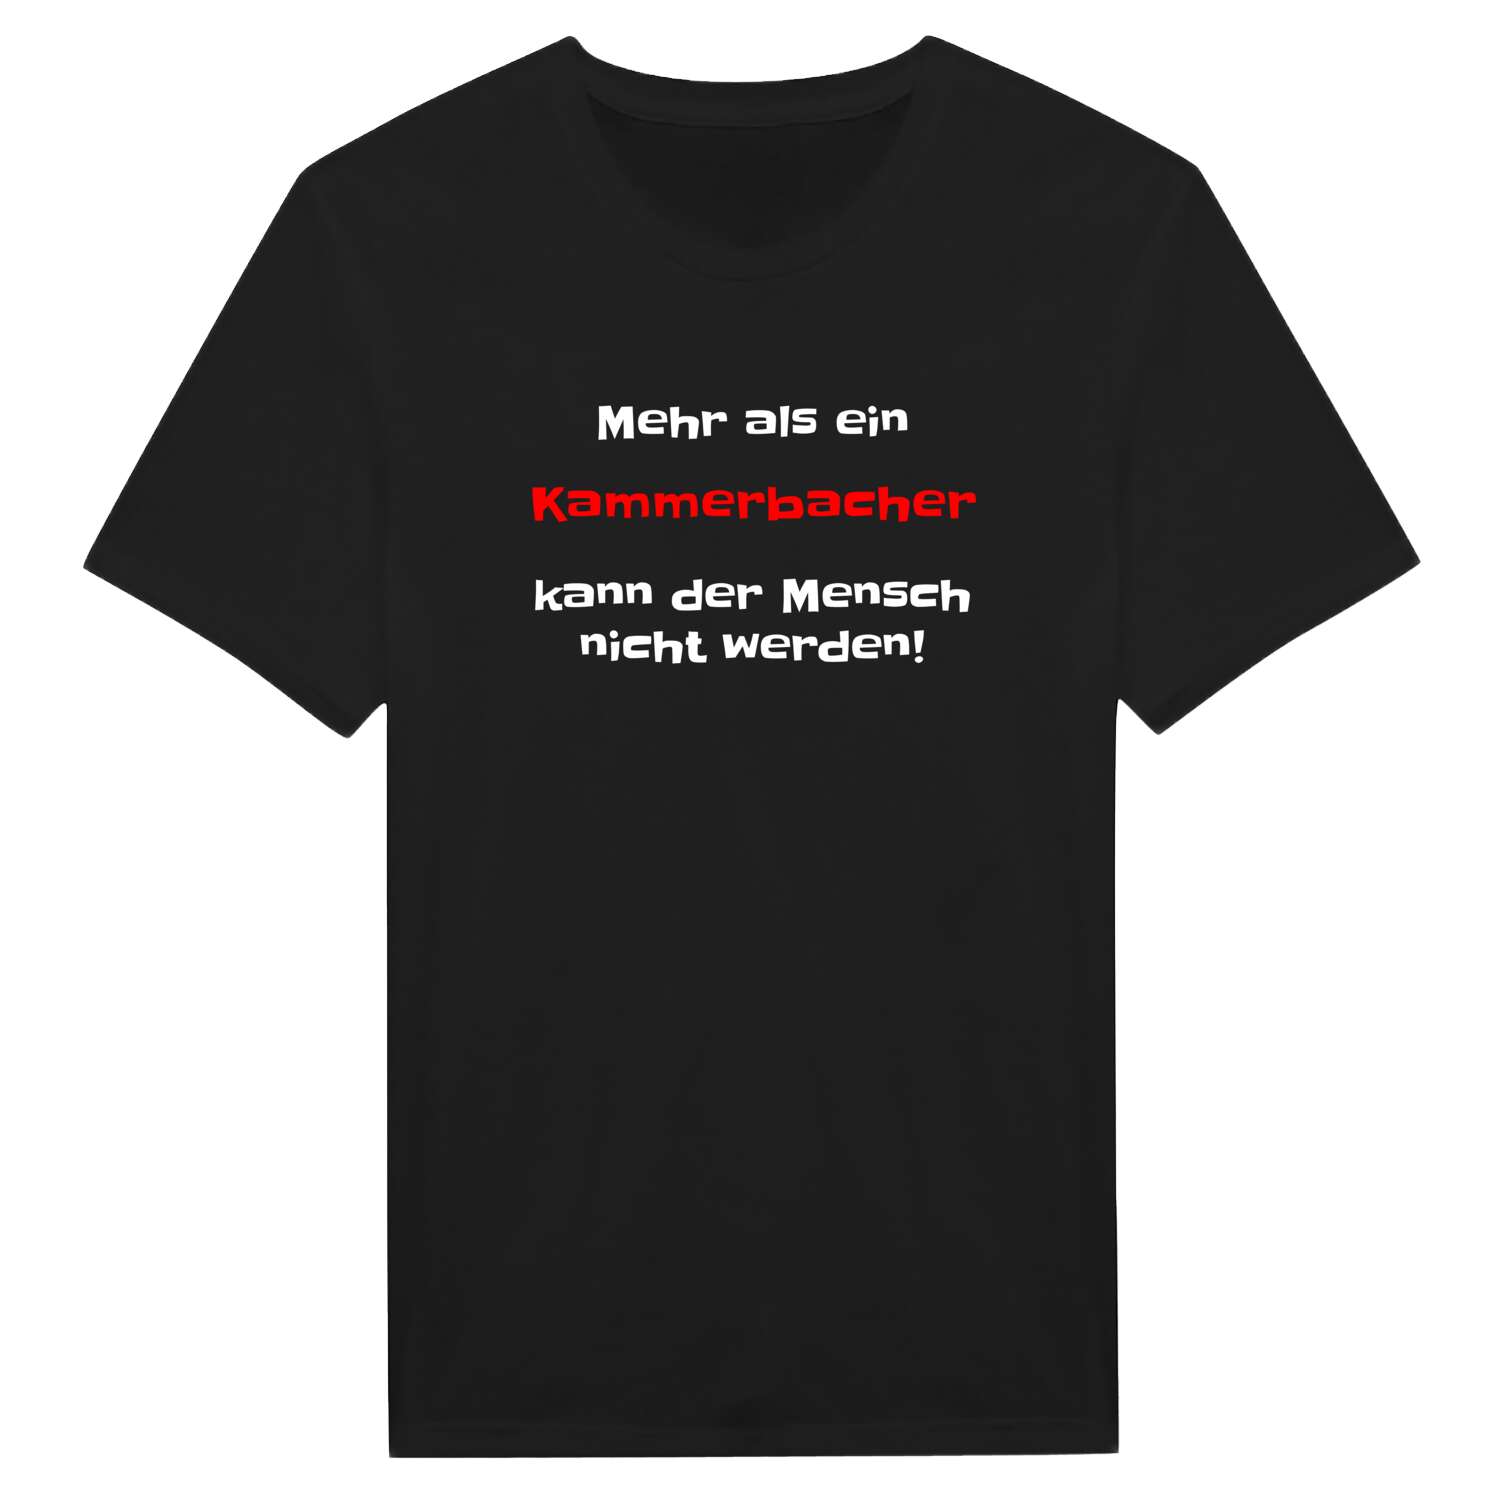 Kammerbach T-Shirt »Mehr als ein«